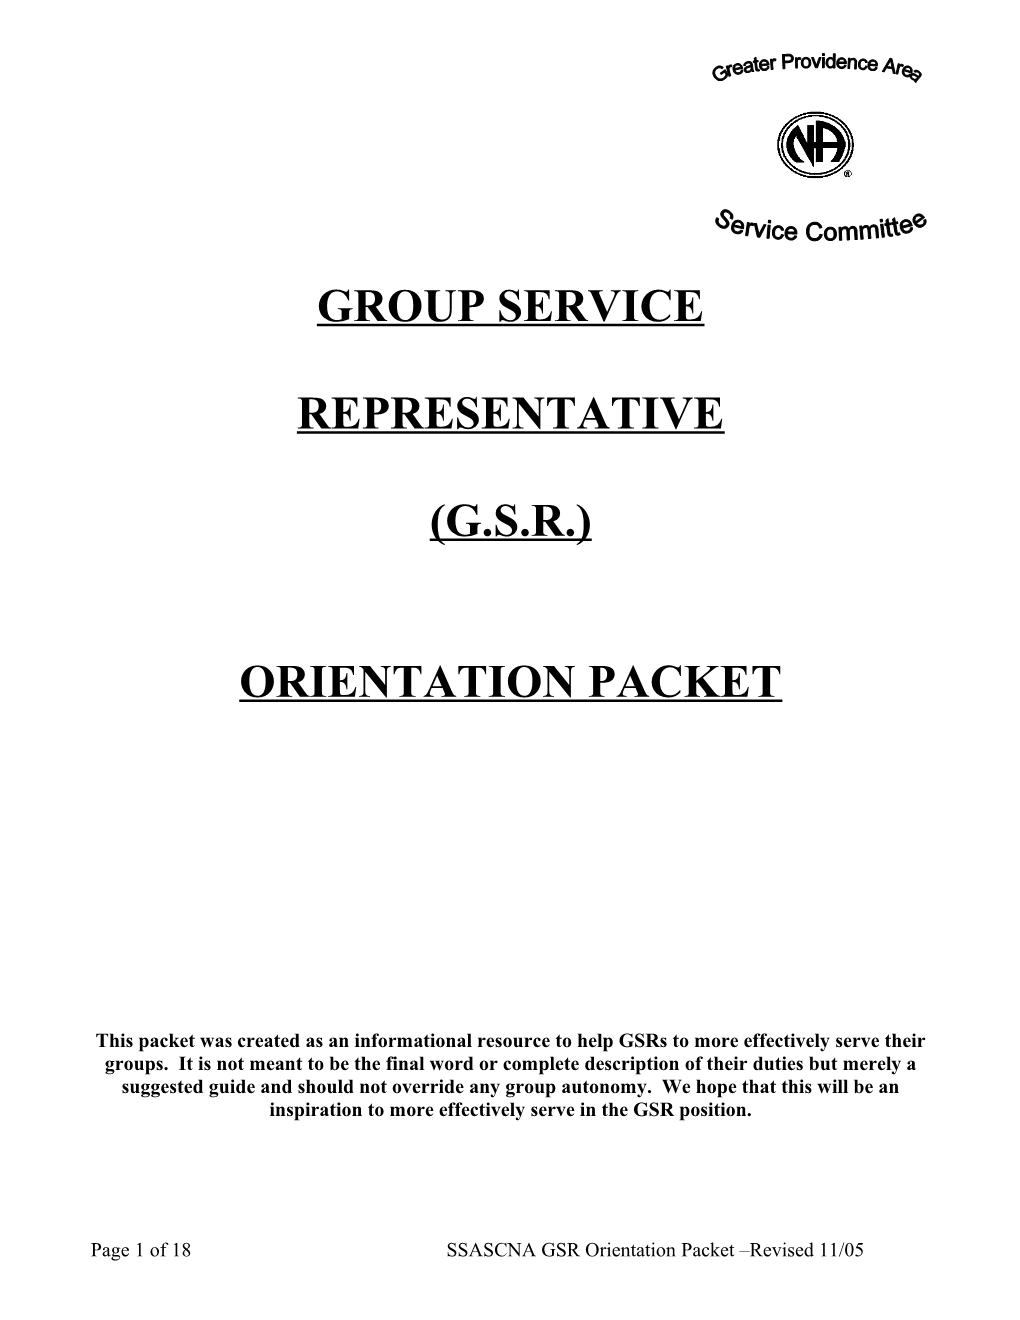 Orientation Packet